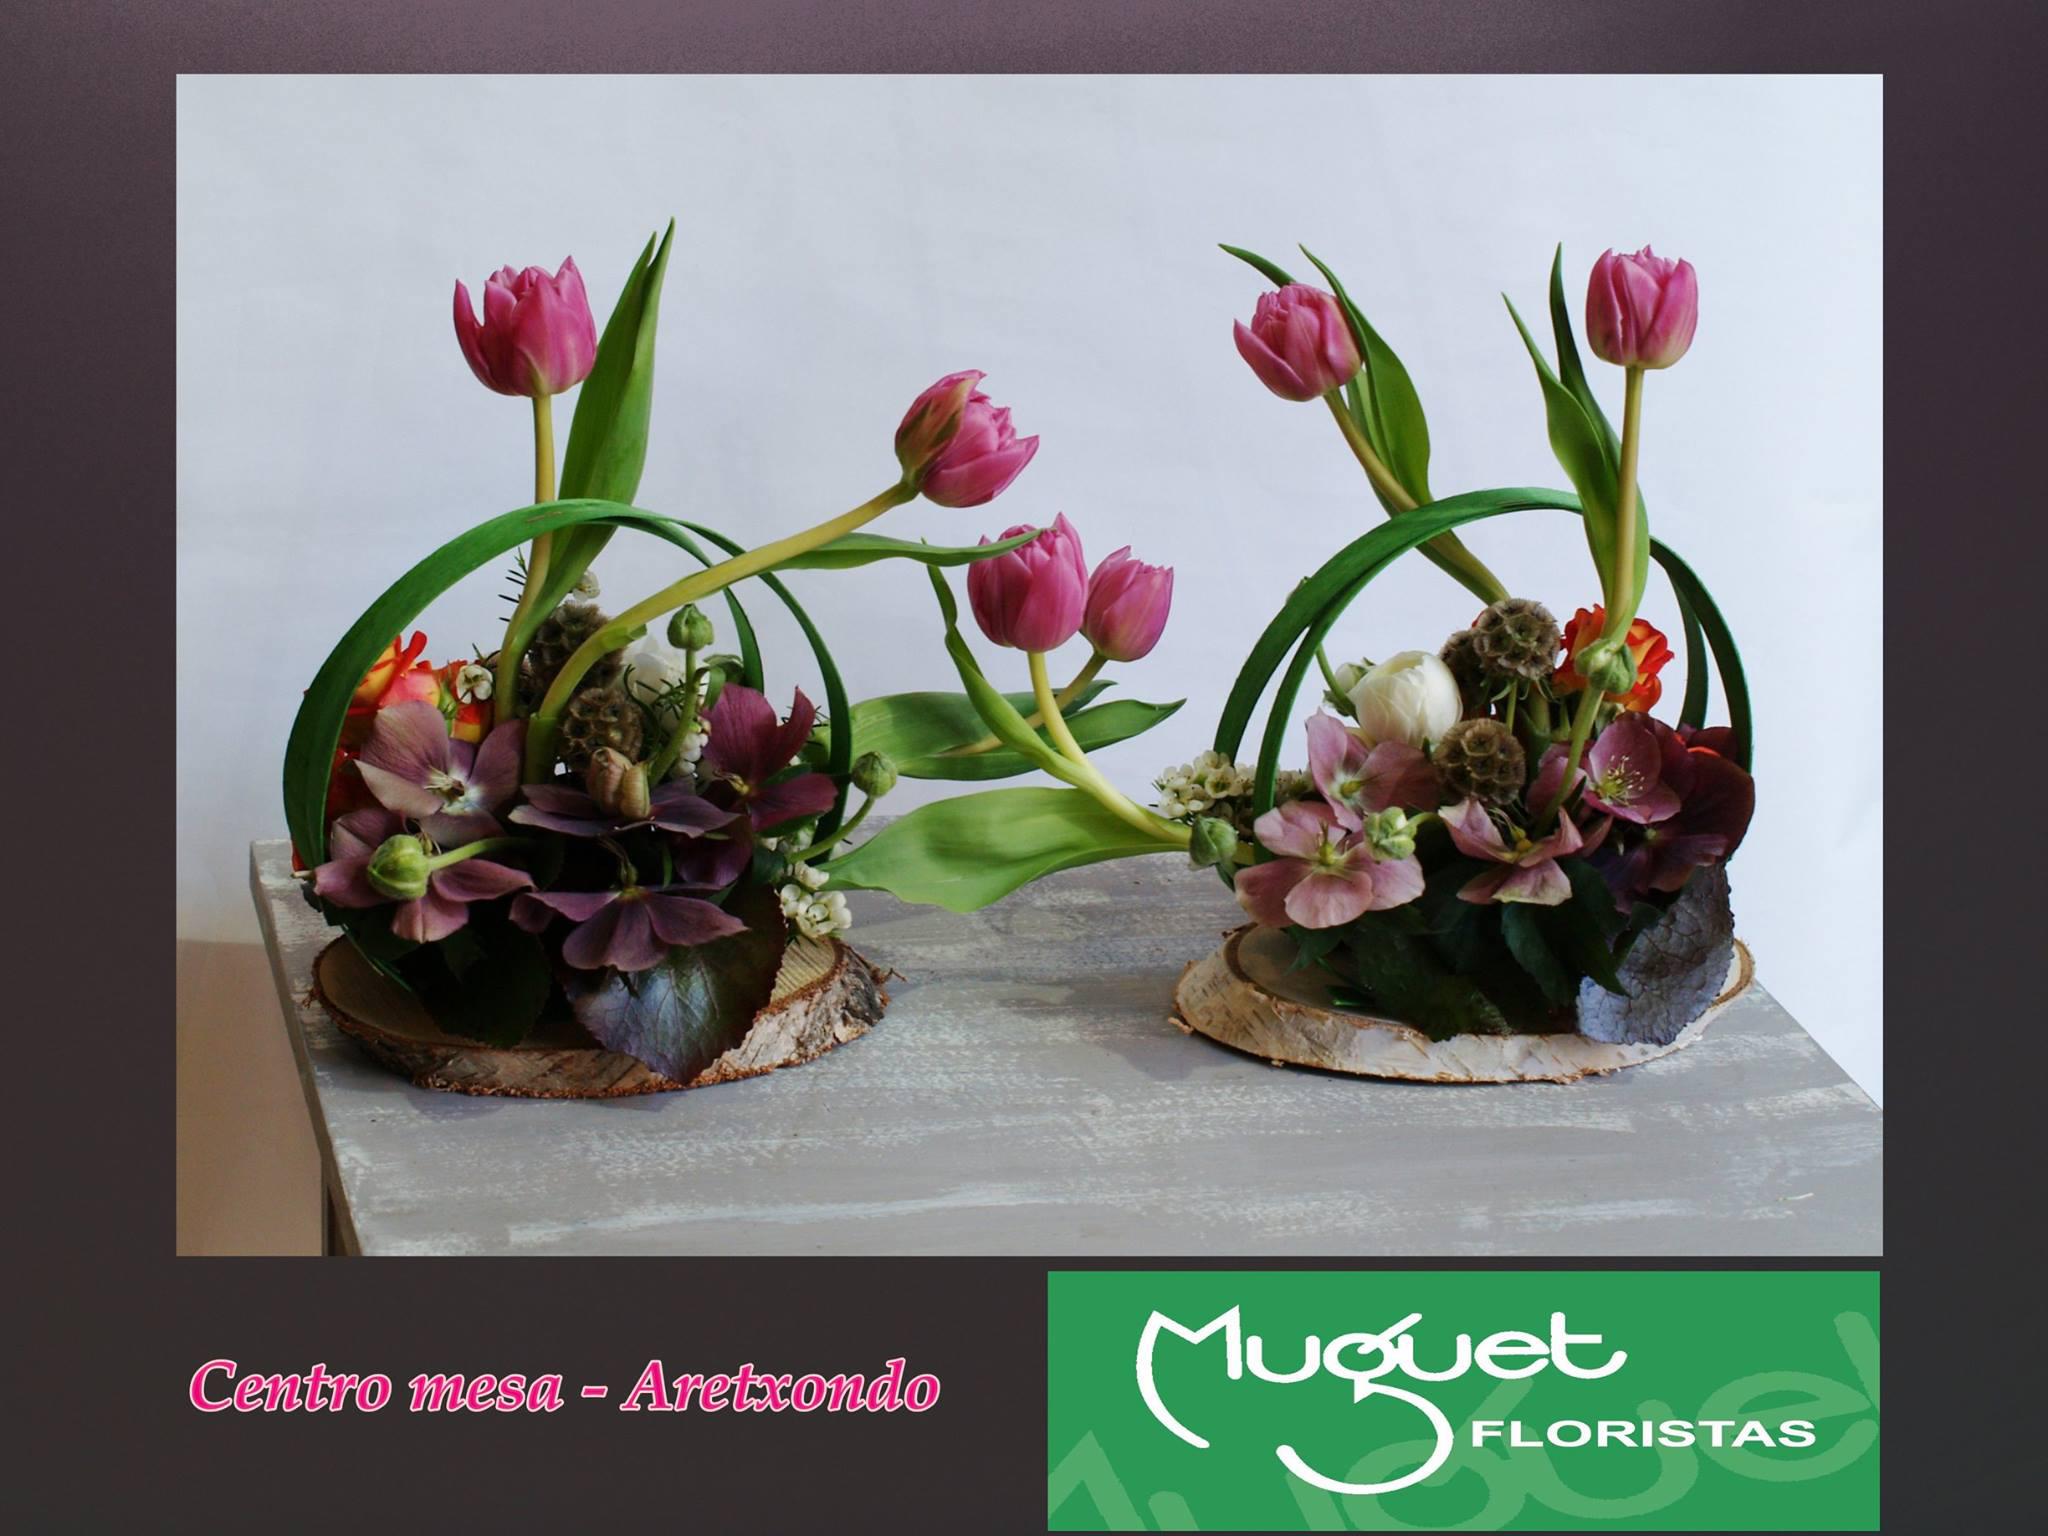 Images Muguet Floristas